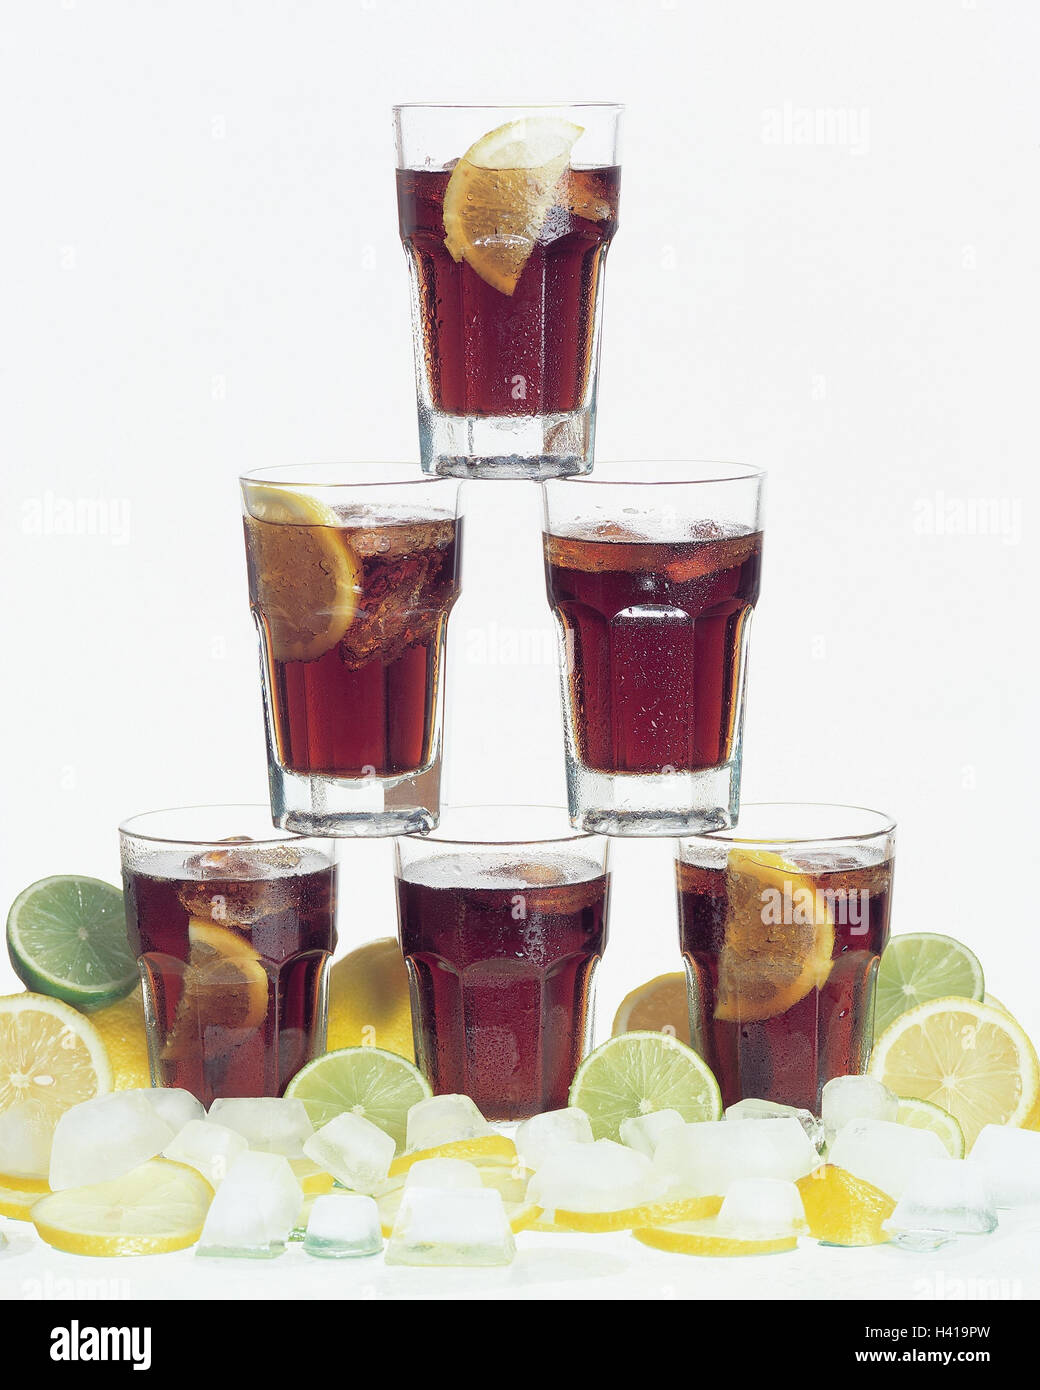 Pyramide de verre, Coca Cola, ice cube, citrons, limes, still life, verre,  pas d'alcool, de boissons gazeuses, les calories, riches en calories, de  limonade, de la caféine, lunettes, contenant de la caféine